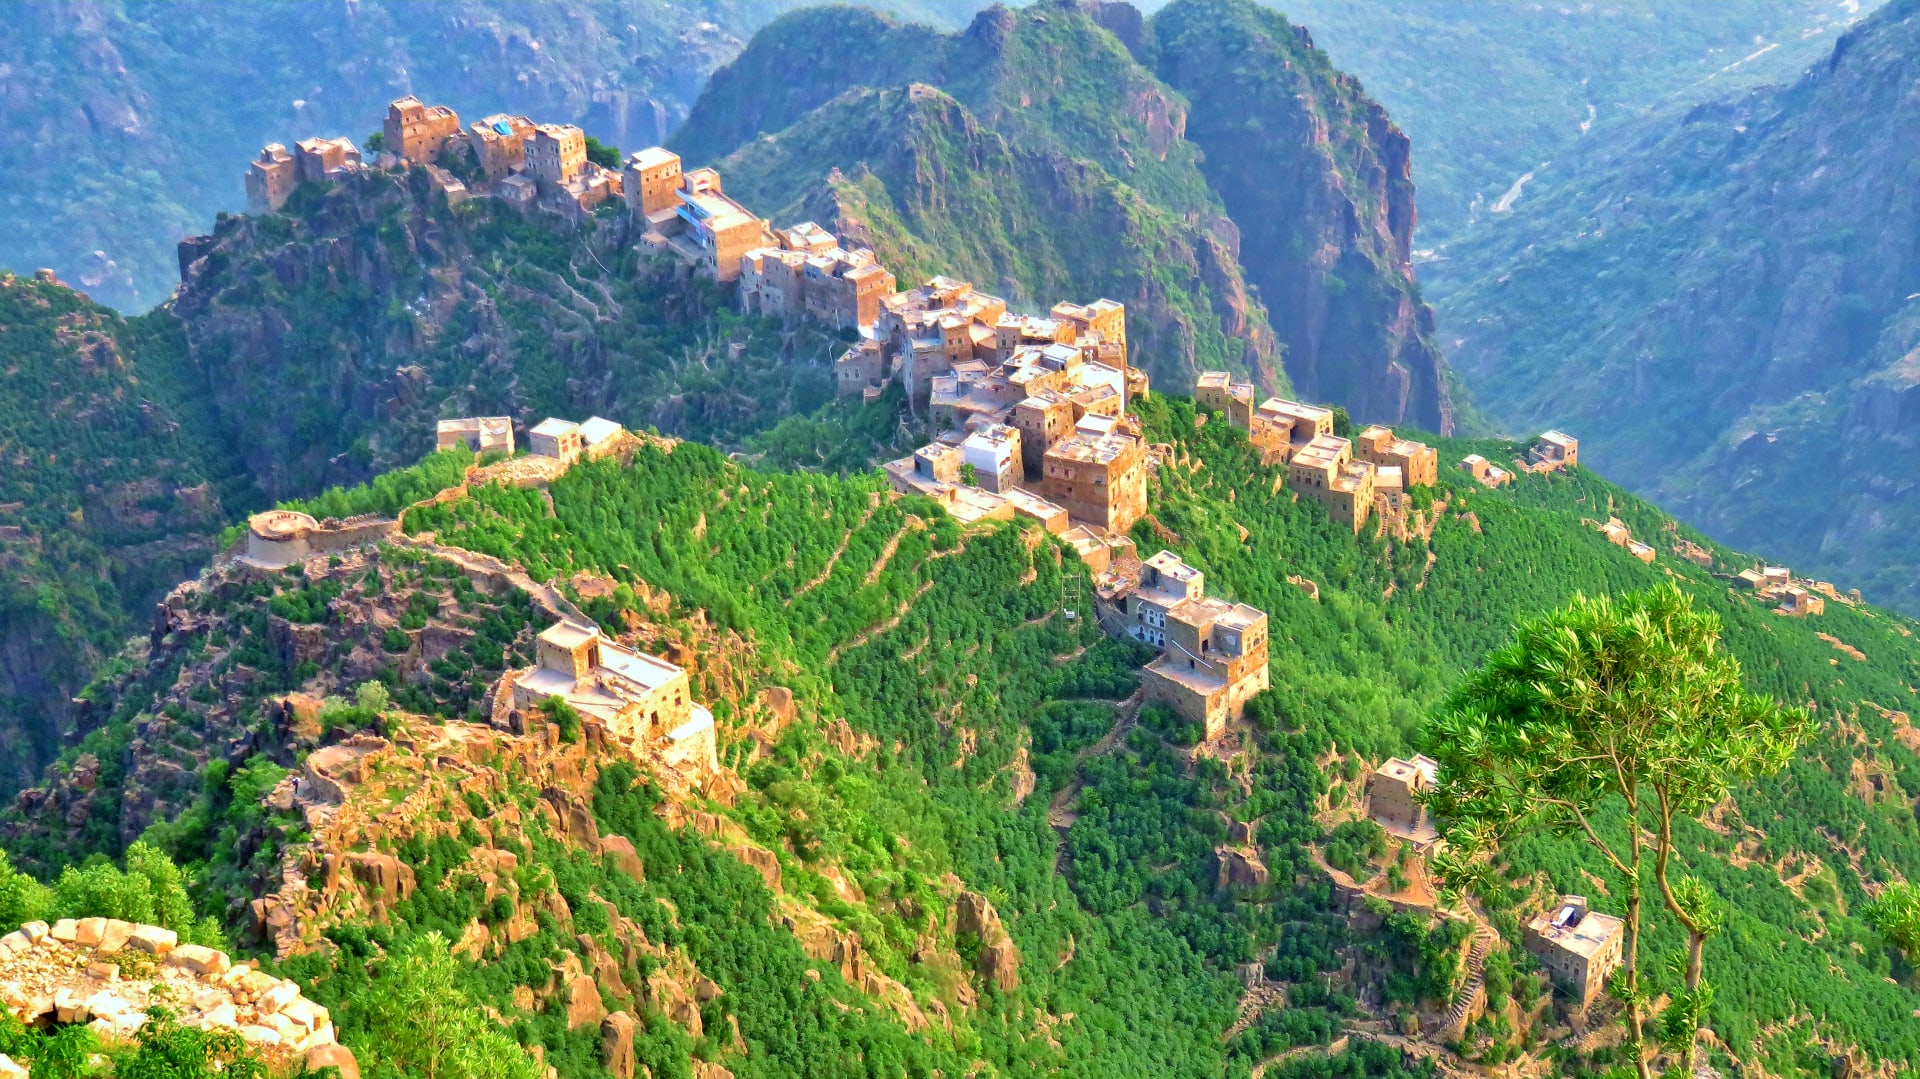 في اليمن.. استكشف آخر بقايا الغابات شبه الاستوائية الواسعة في شبه الجزيرة العربية بهذا الجبل الزاهي